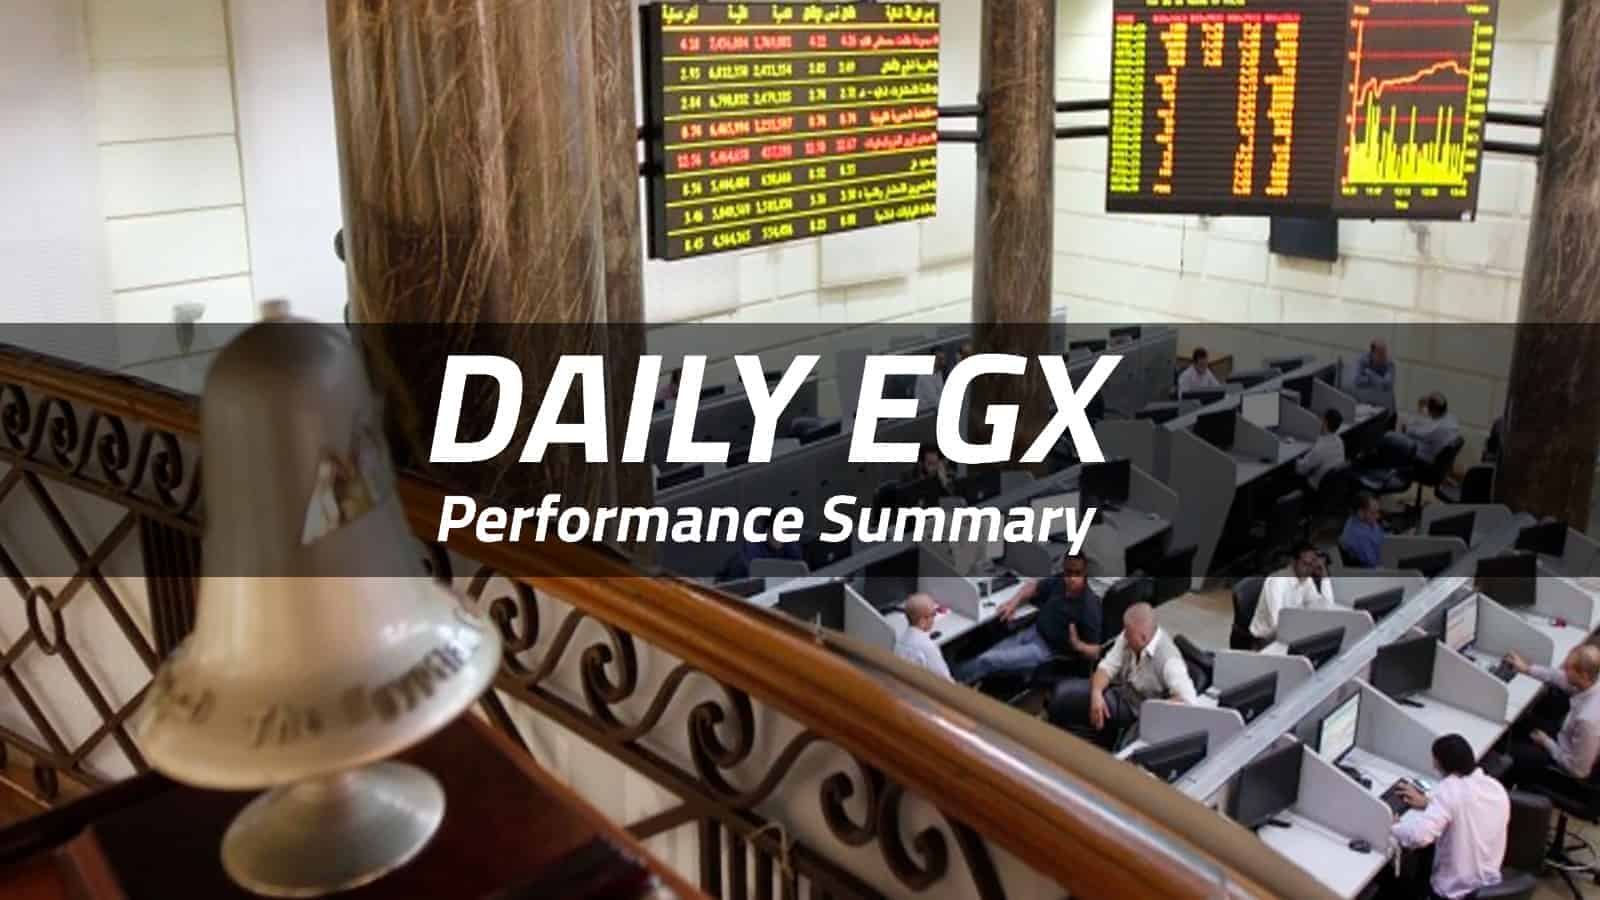 EGX sees bullish trend on Tuesday